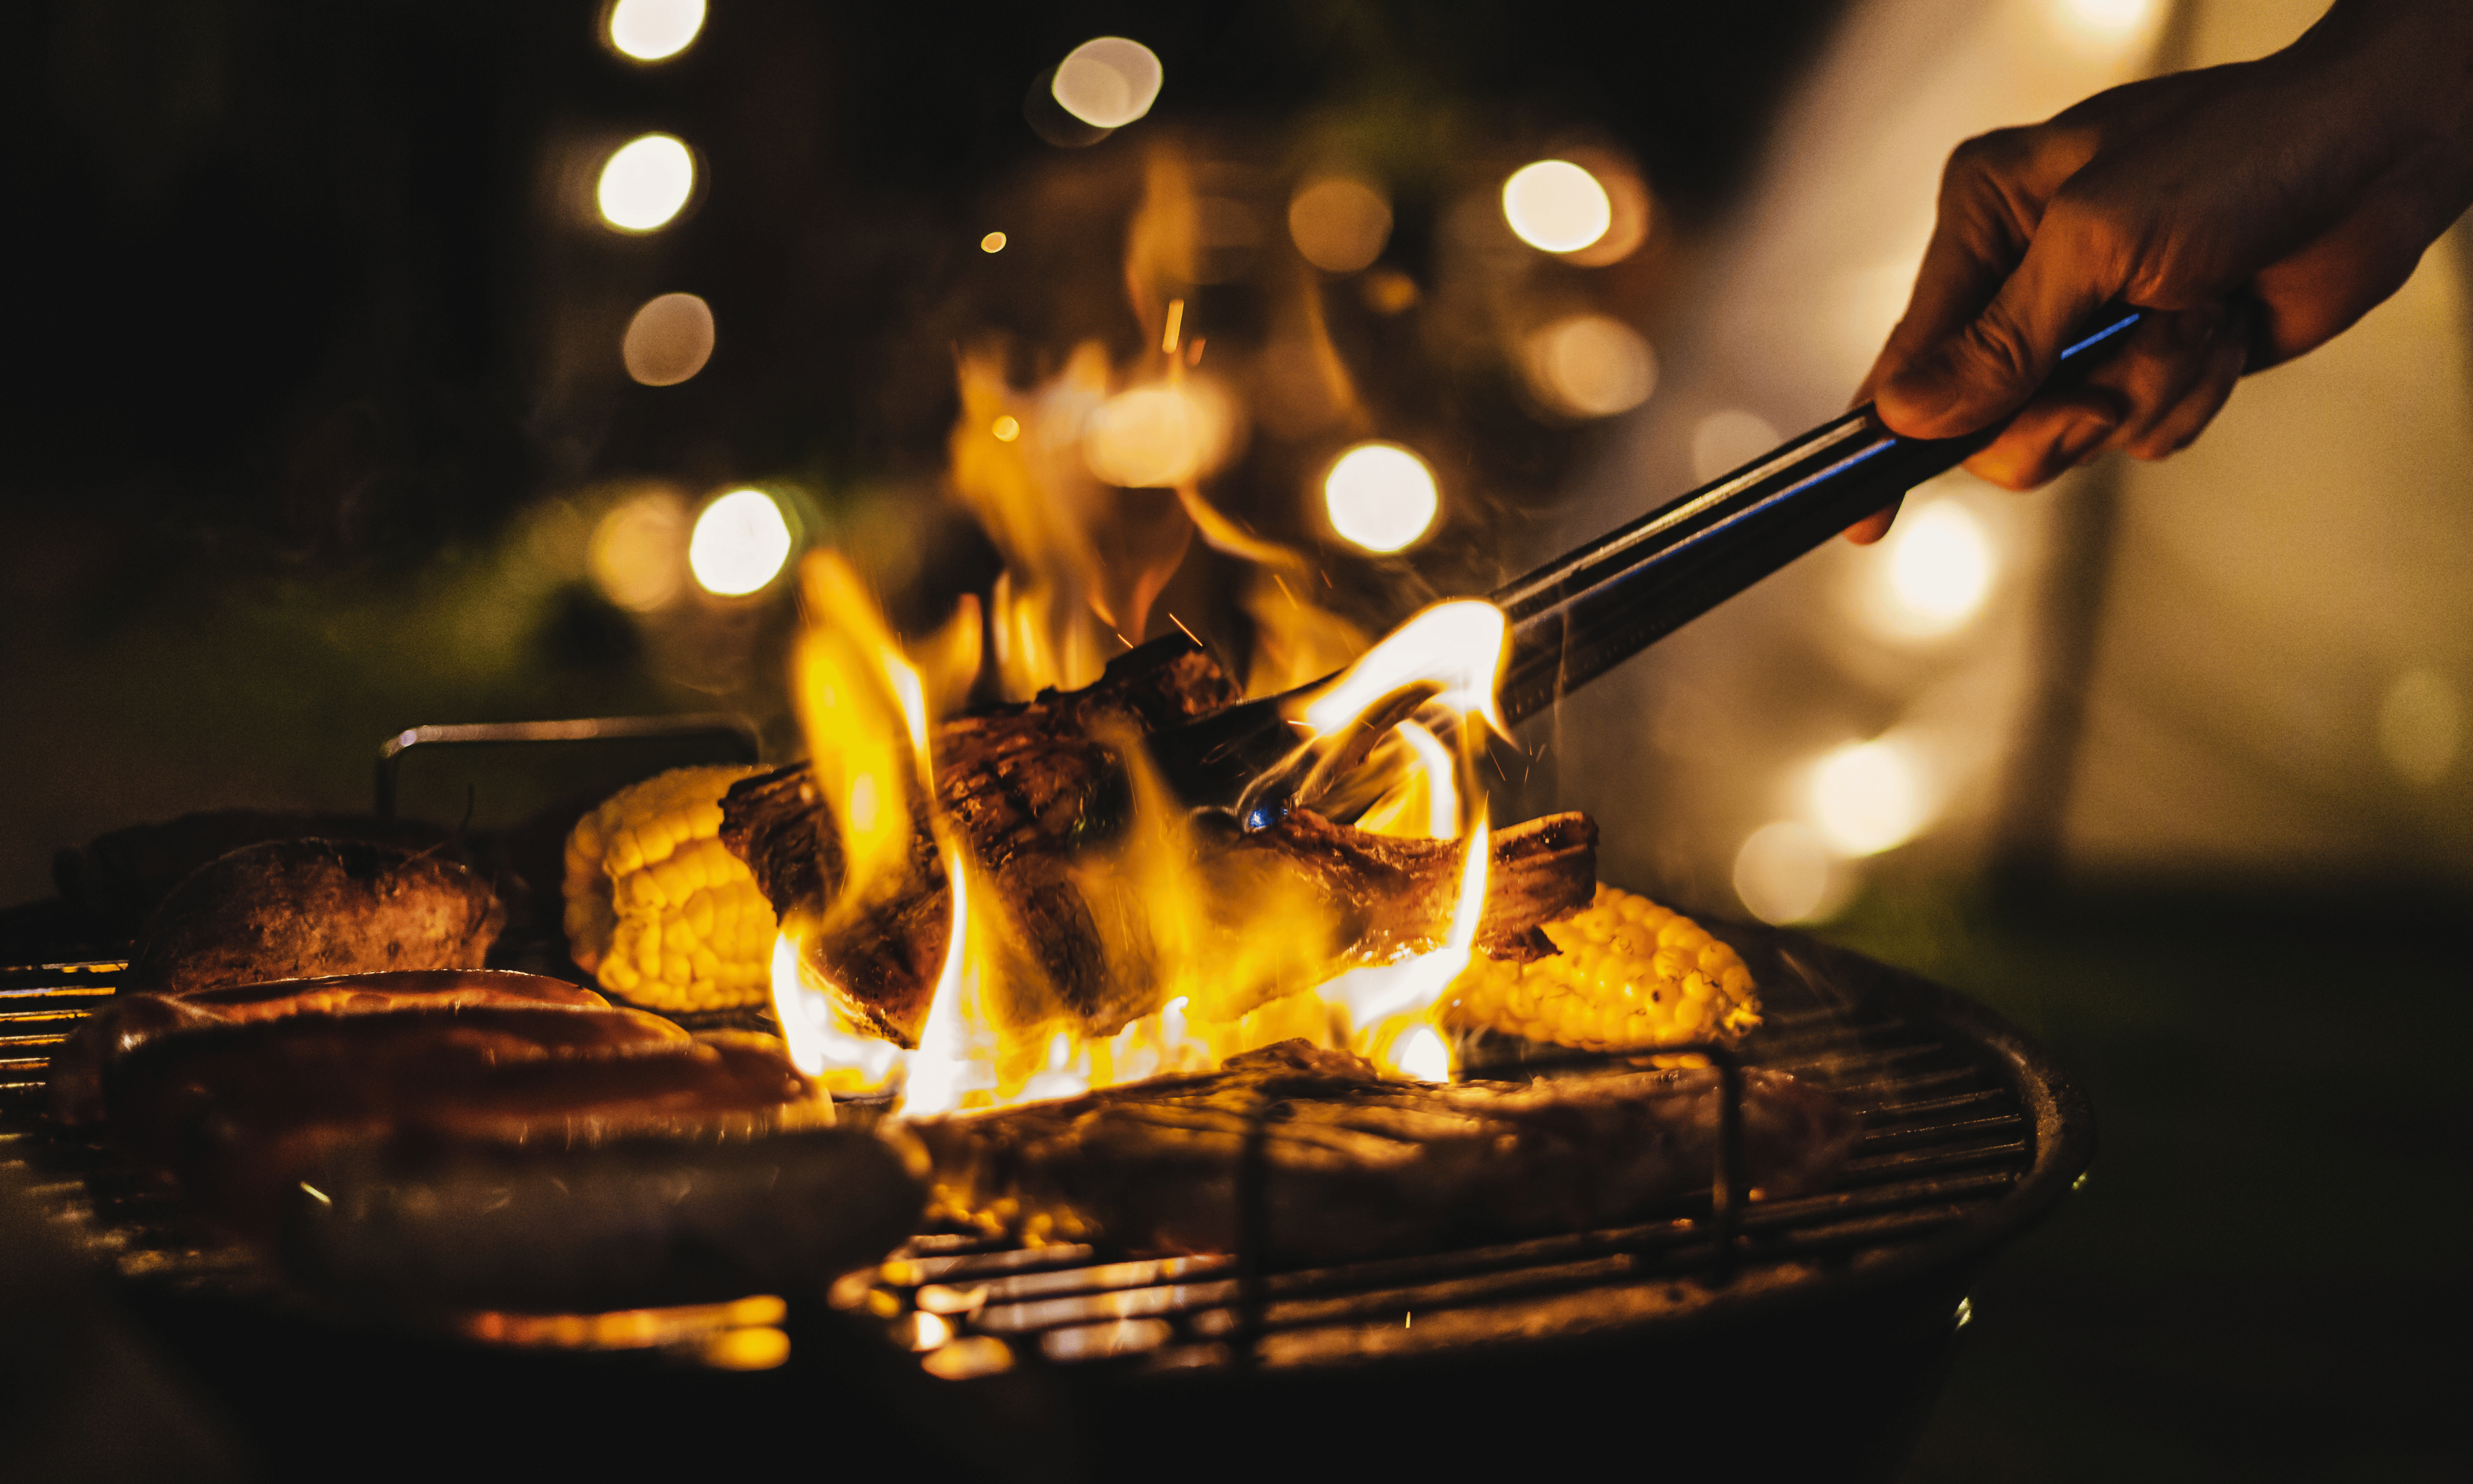 Eine Person grillt nachts verschiedene Lebensmittel auf einem Grill mit sichtbaren Flammen und schafft so eine warme und einladende Atmosphäre.